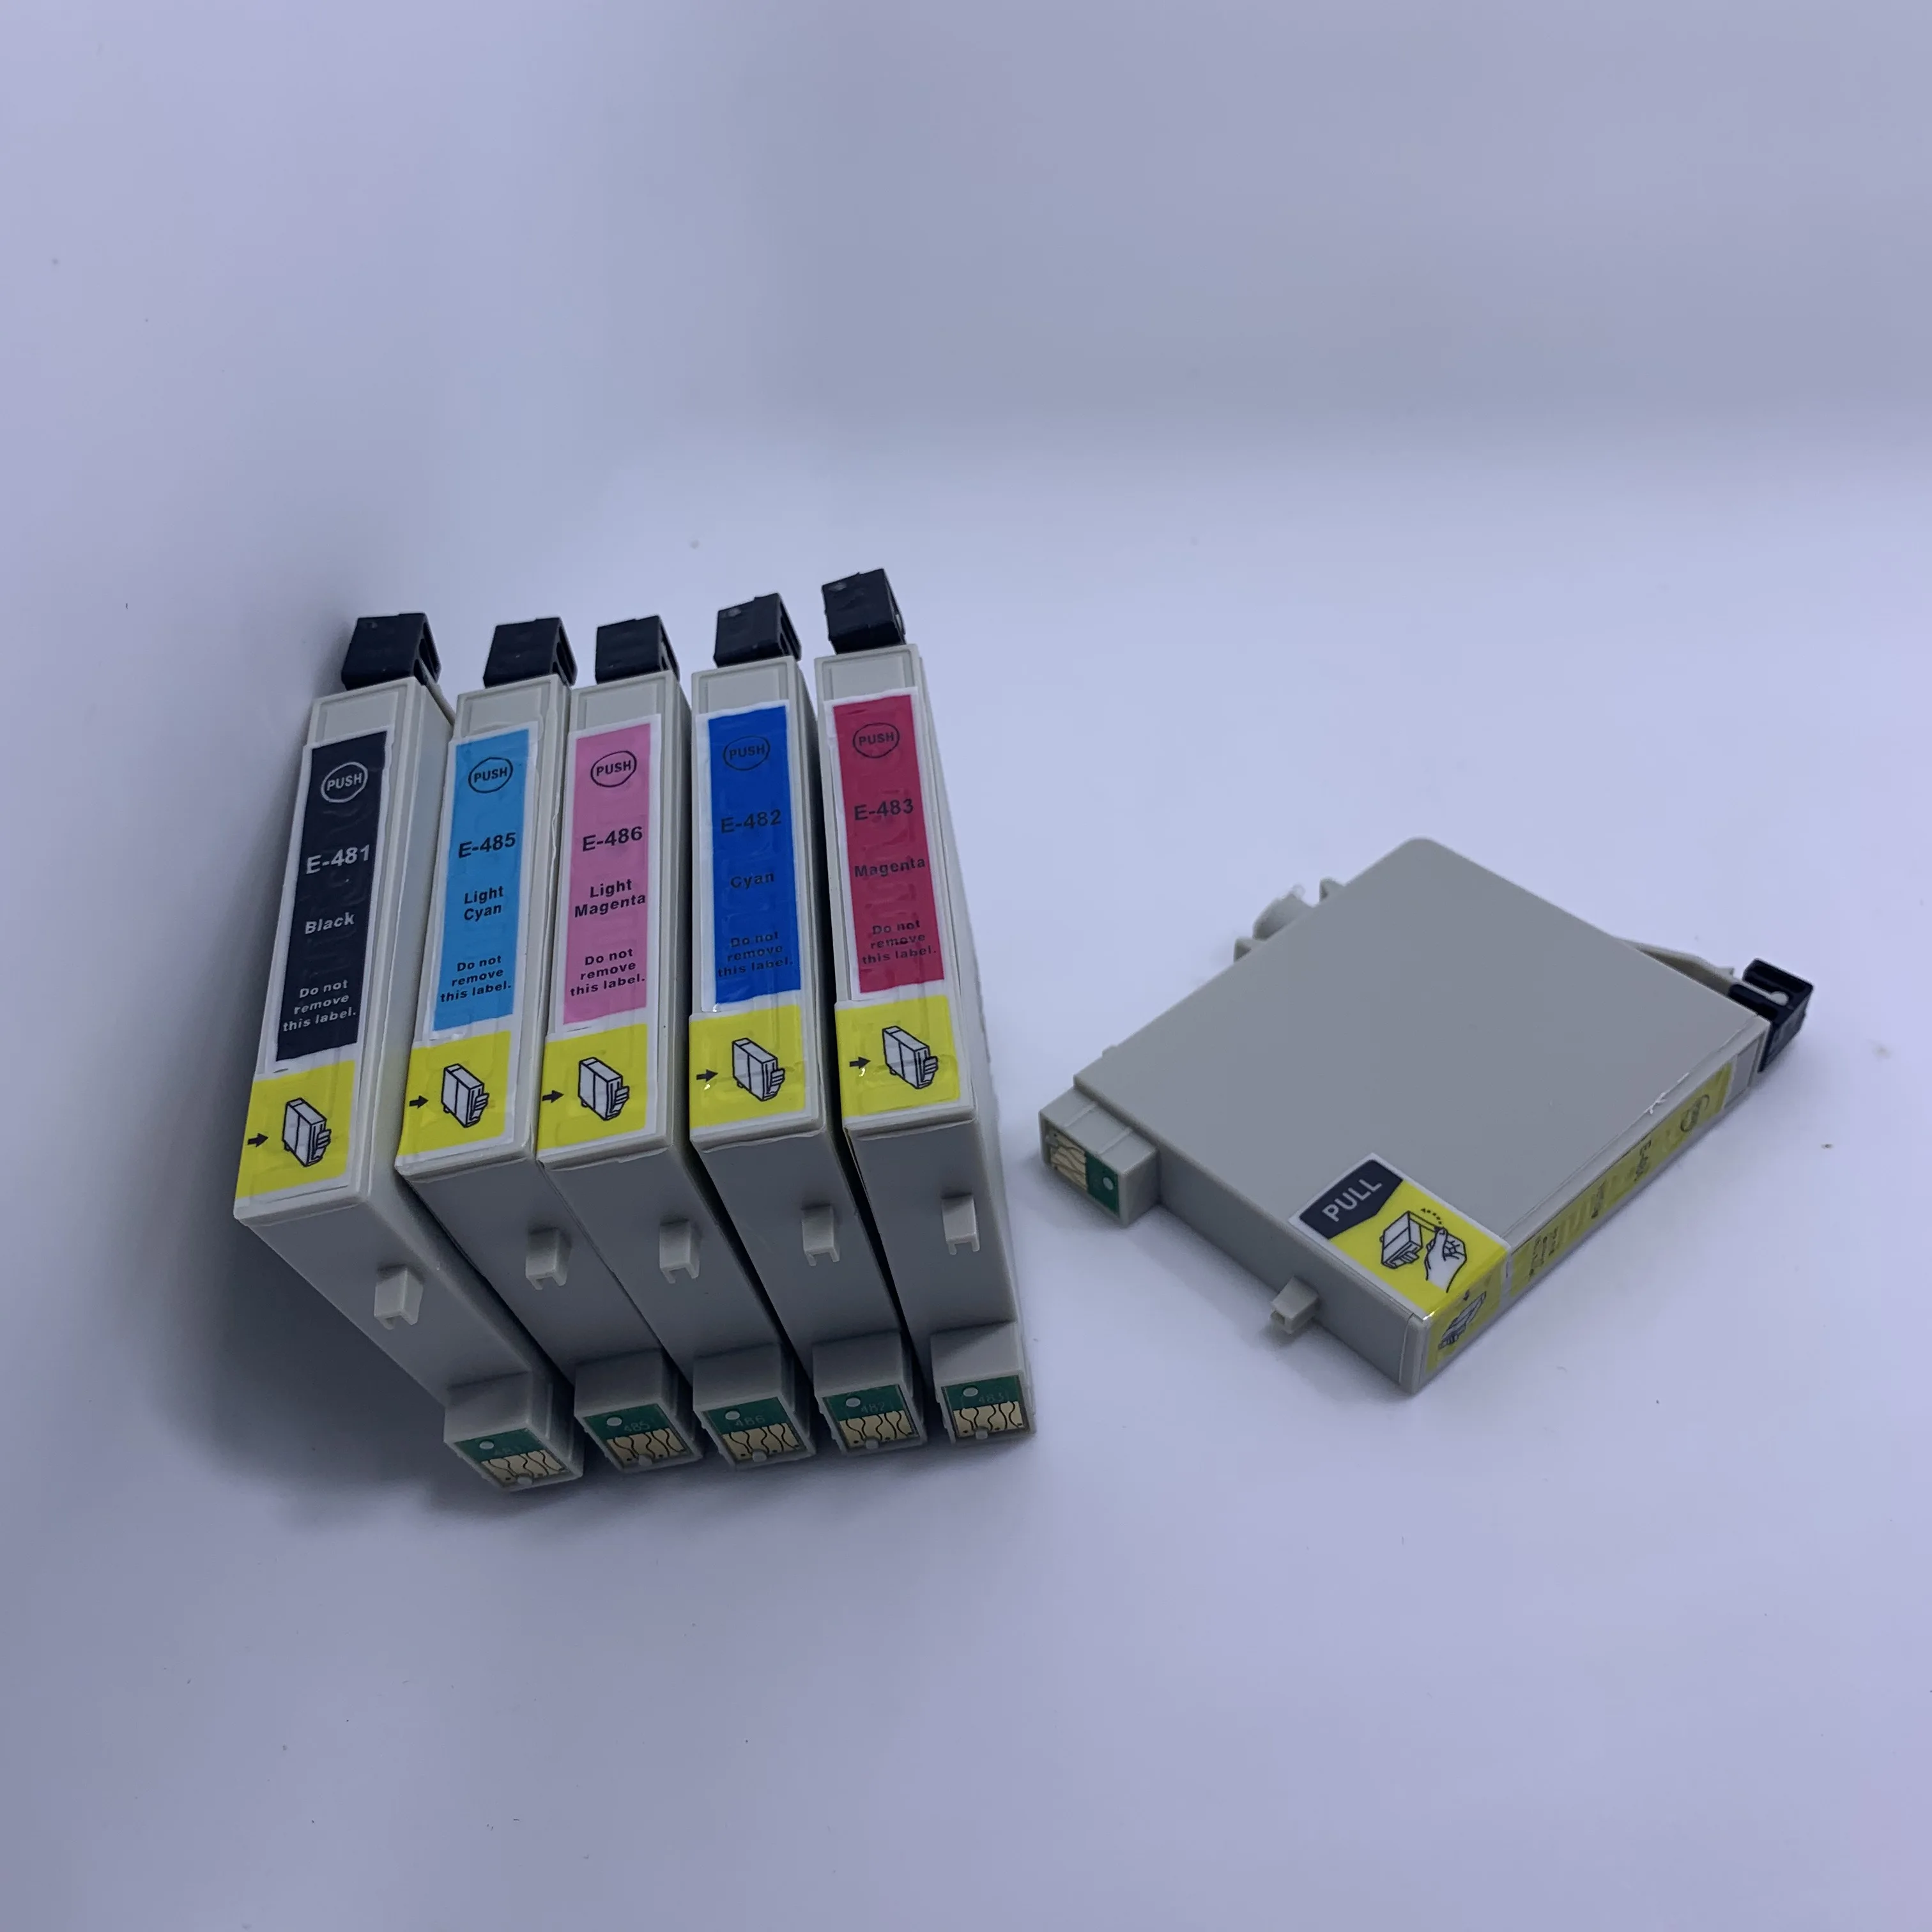 

6 упаковок, картриджи для принтера Epson T0481 T0482 T0483 T0484 T0485 T0486 Stylus R290 R200 R300 RX500 RX620